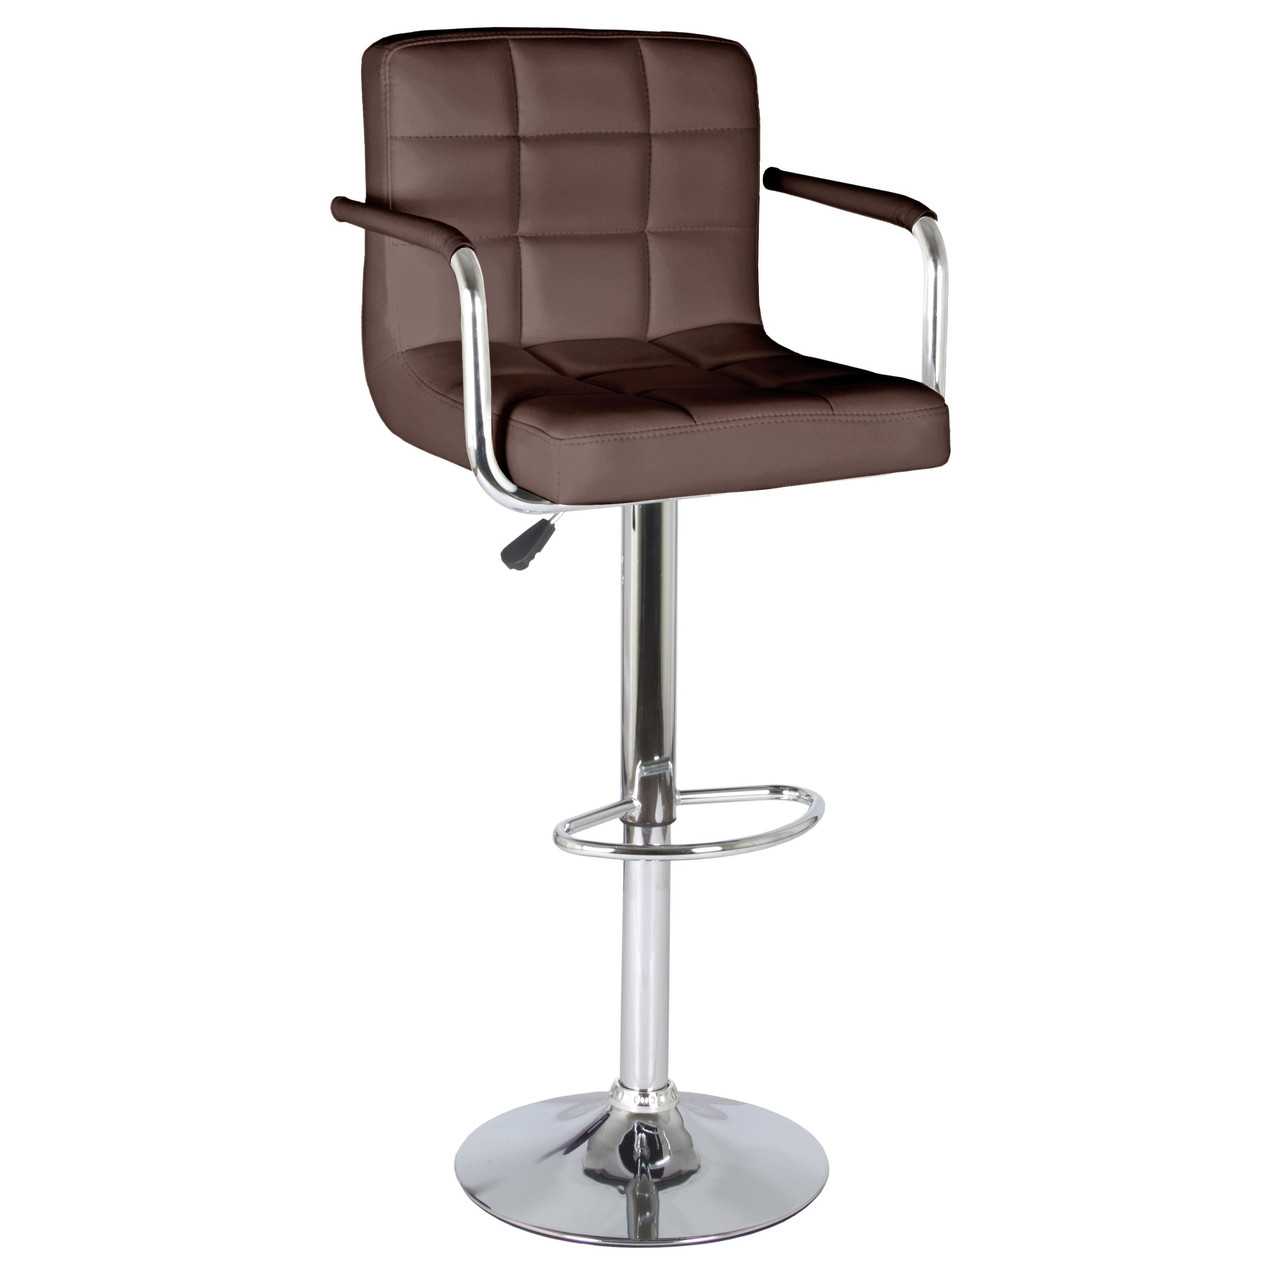 Барные стулья с регулируемой высотой — модели с регулировкой и подлокотниками, варианты со спинкой и с подножкой на колесиках, примеры в интерьере